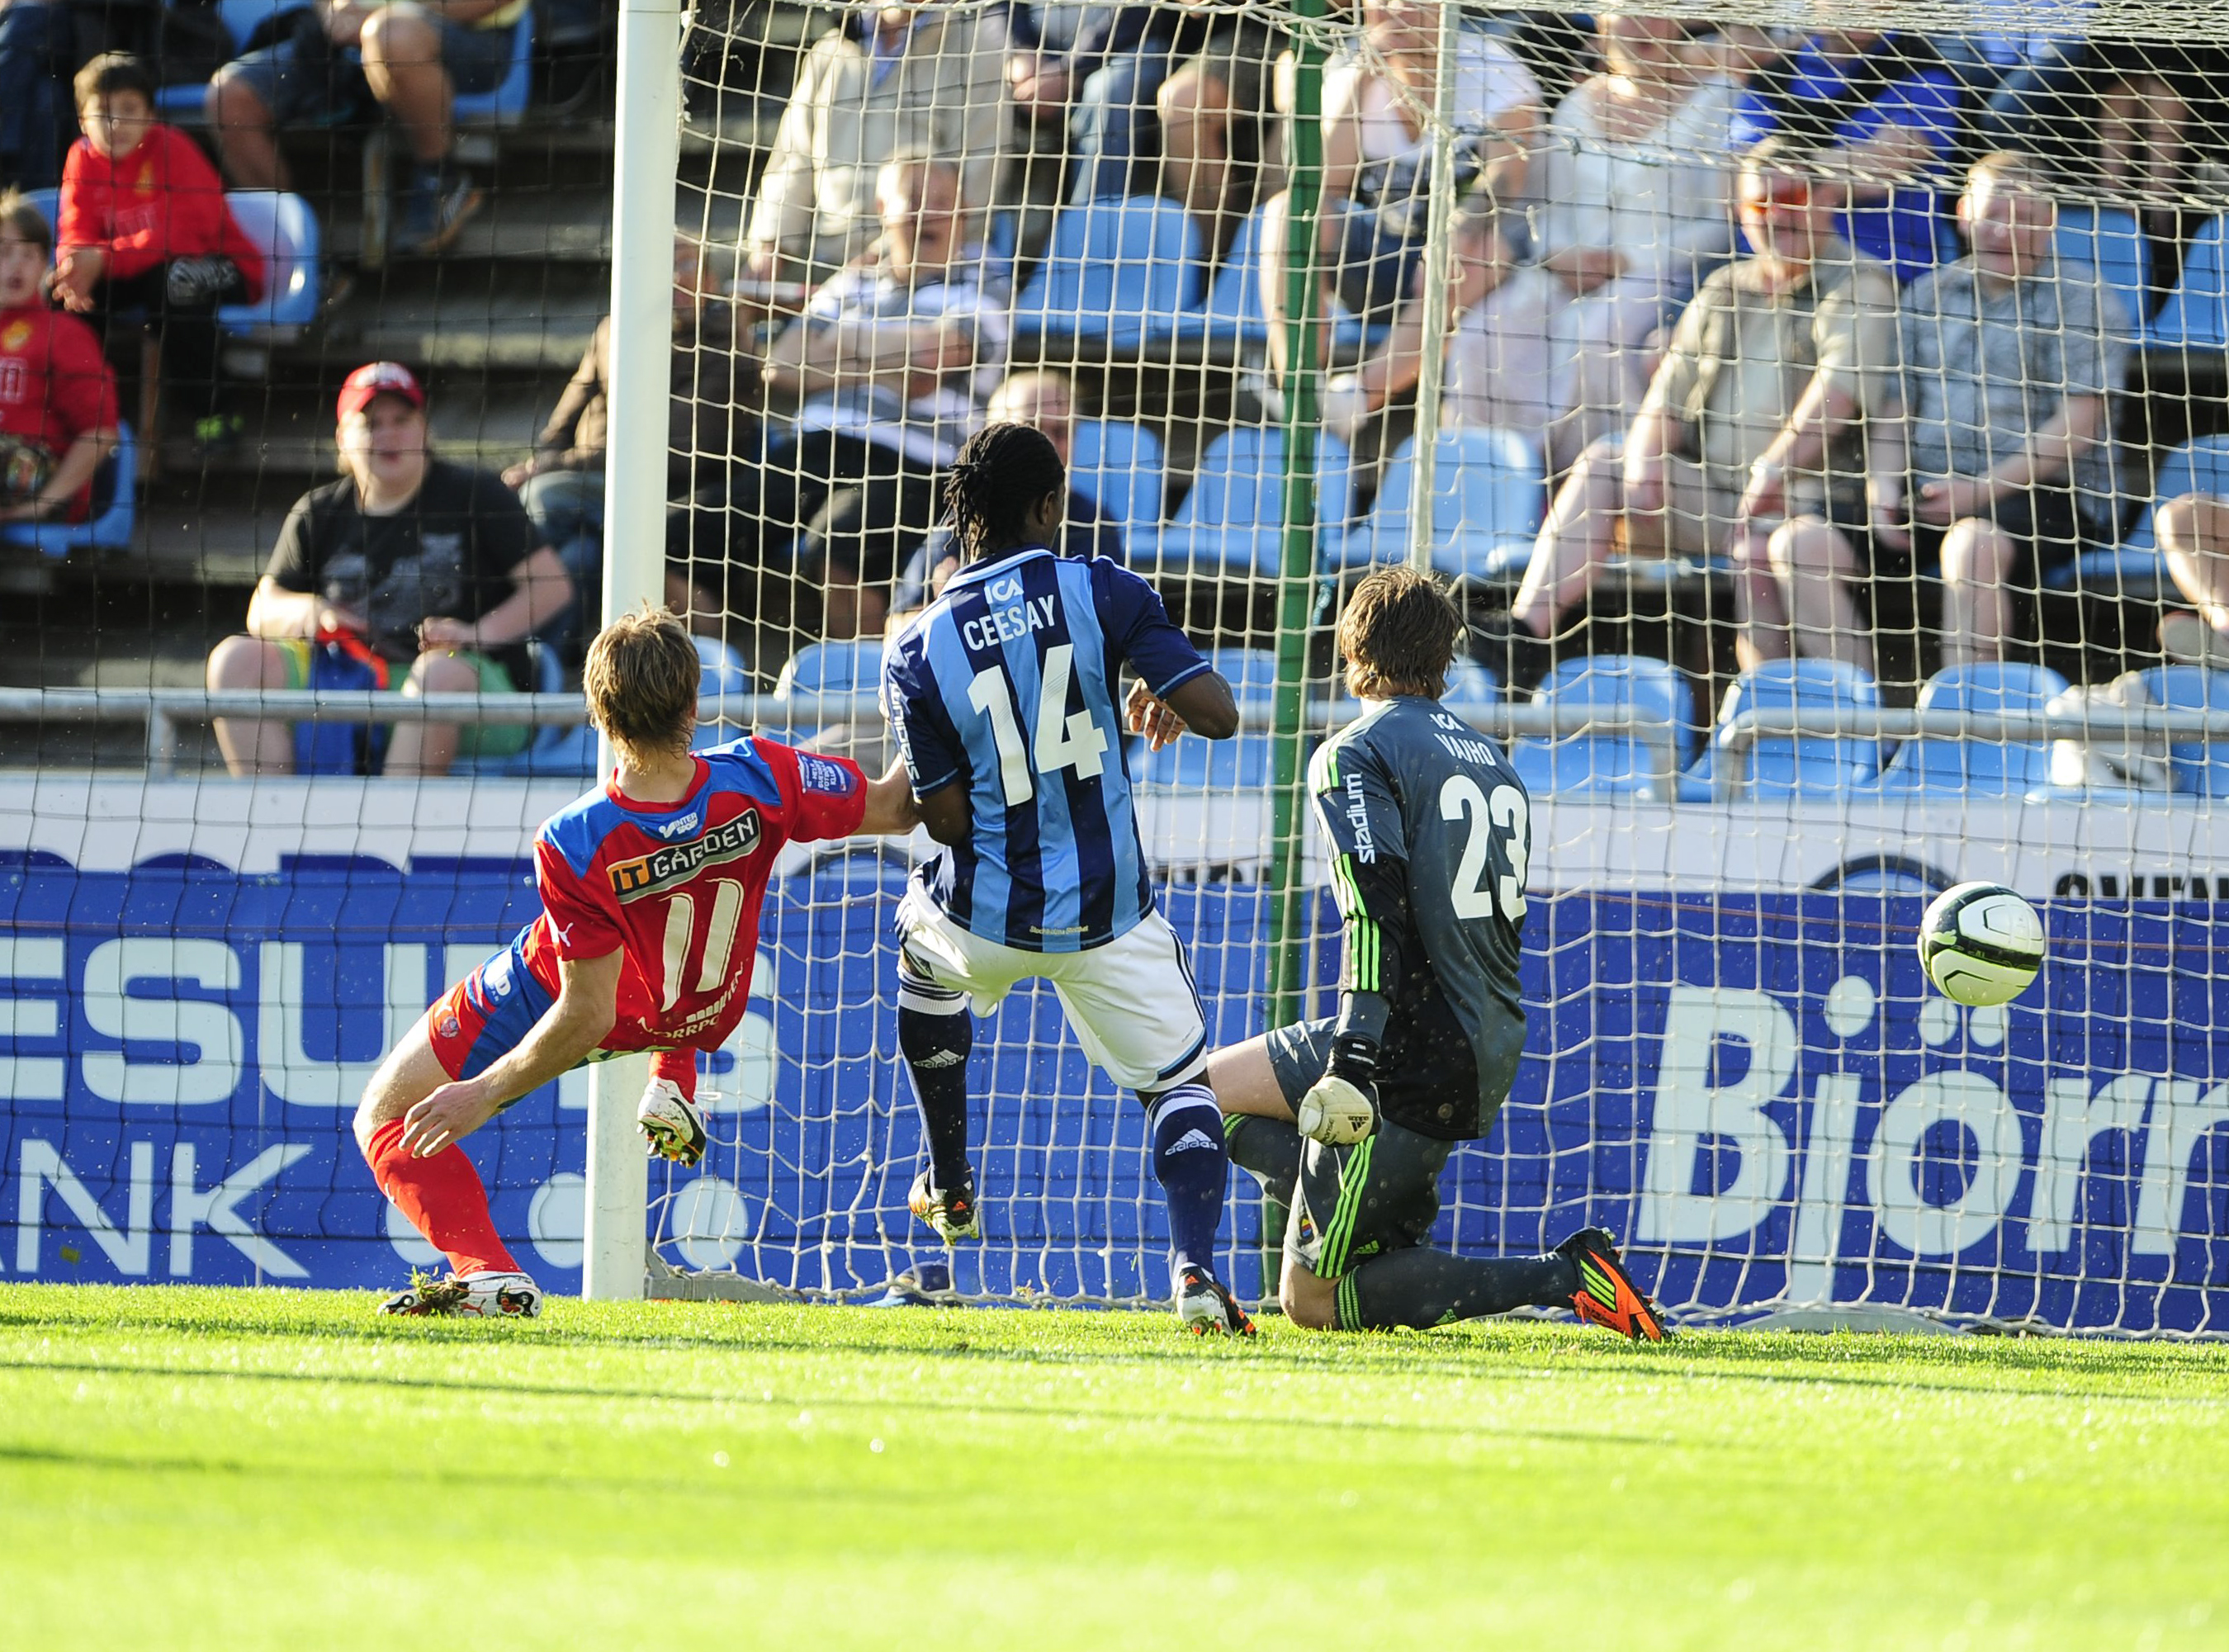 Trots målvaktstabben av Tommi Vaiho i den andra minuten spelade Djurgården sin femte raka 1–1-match.